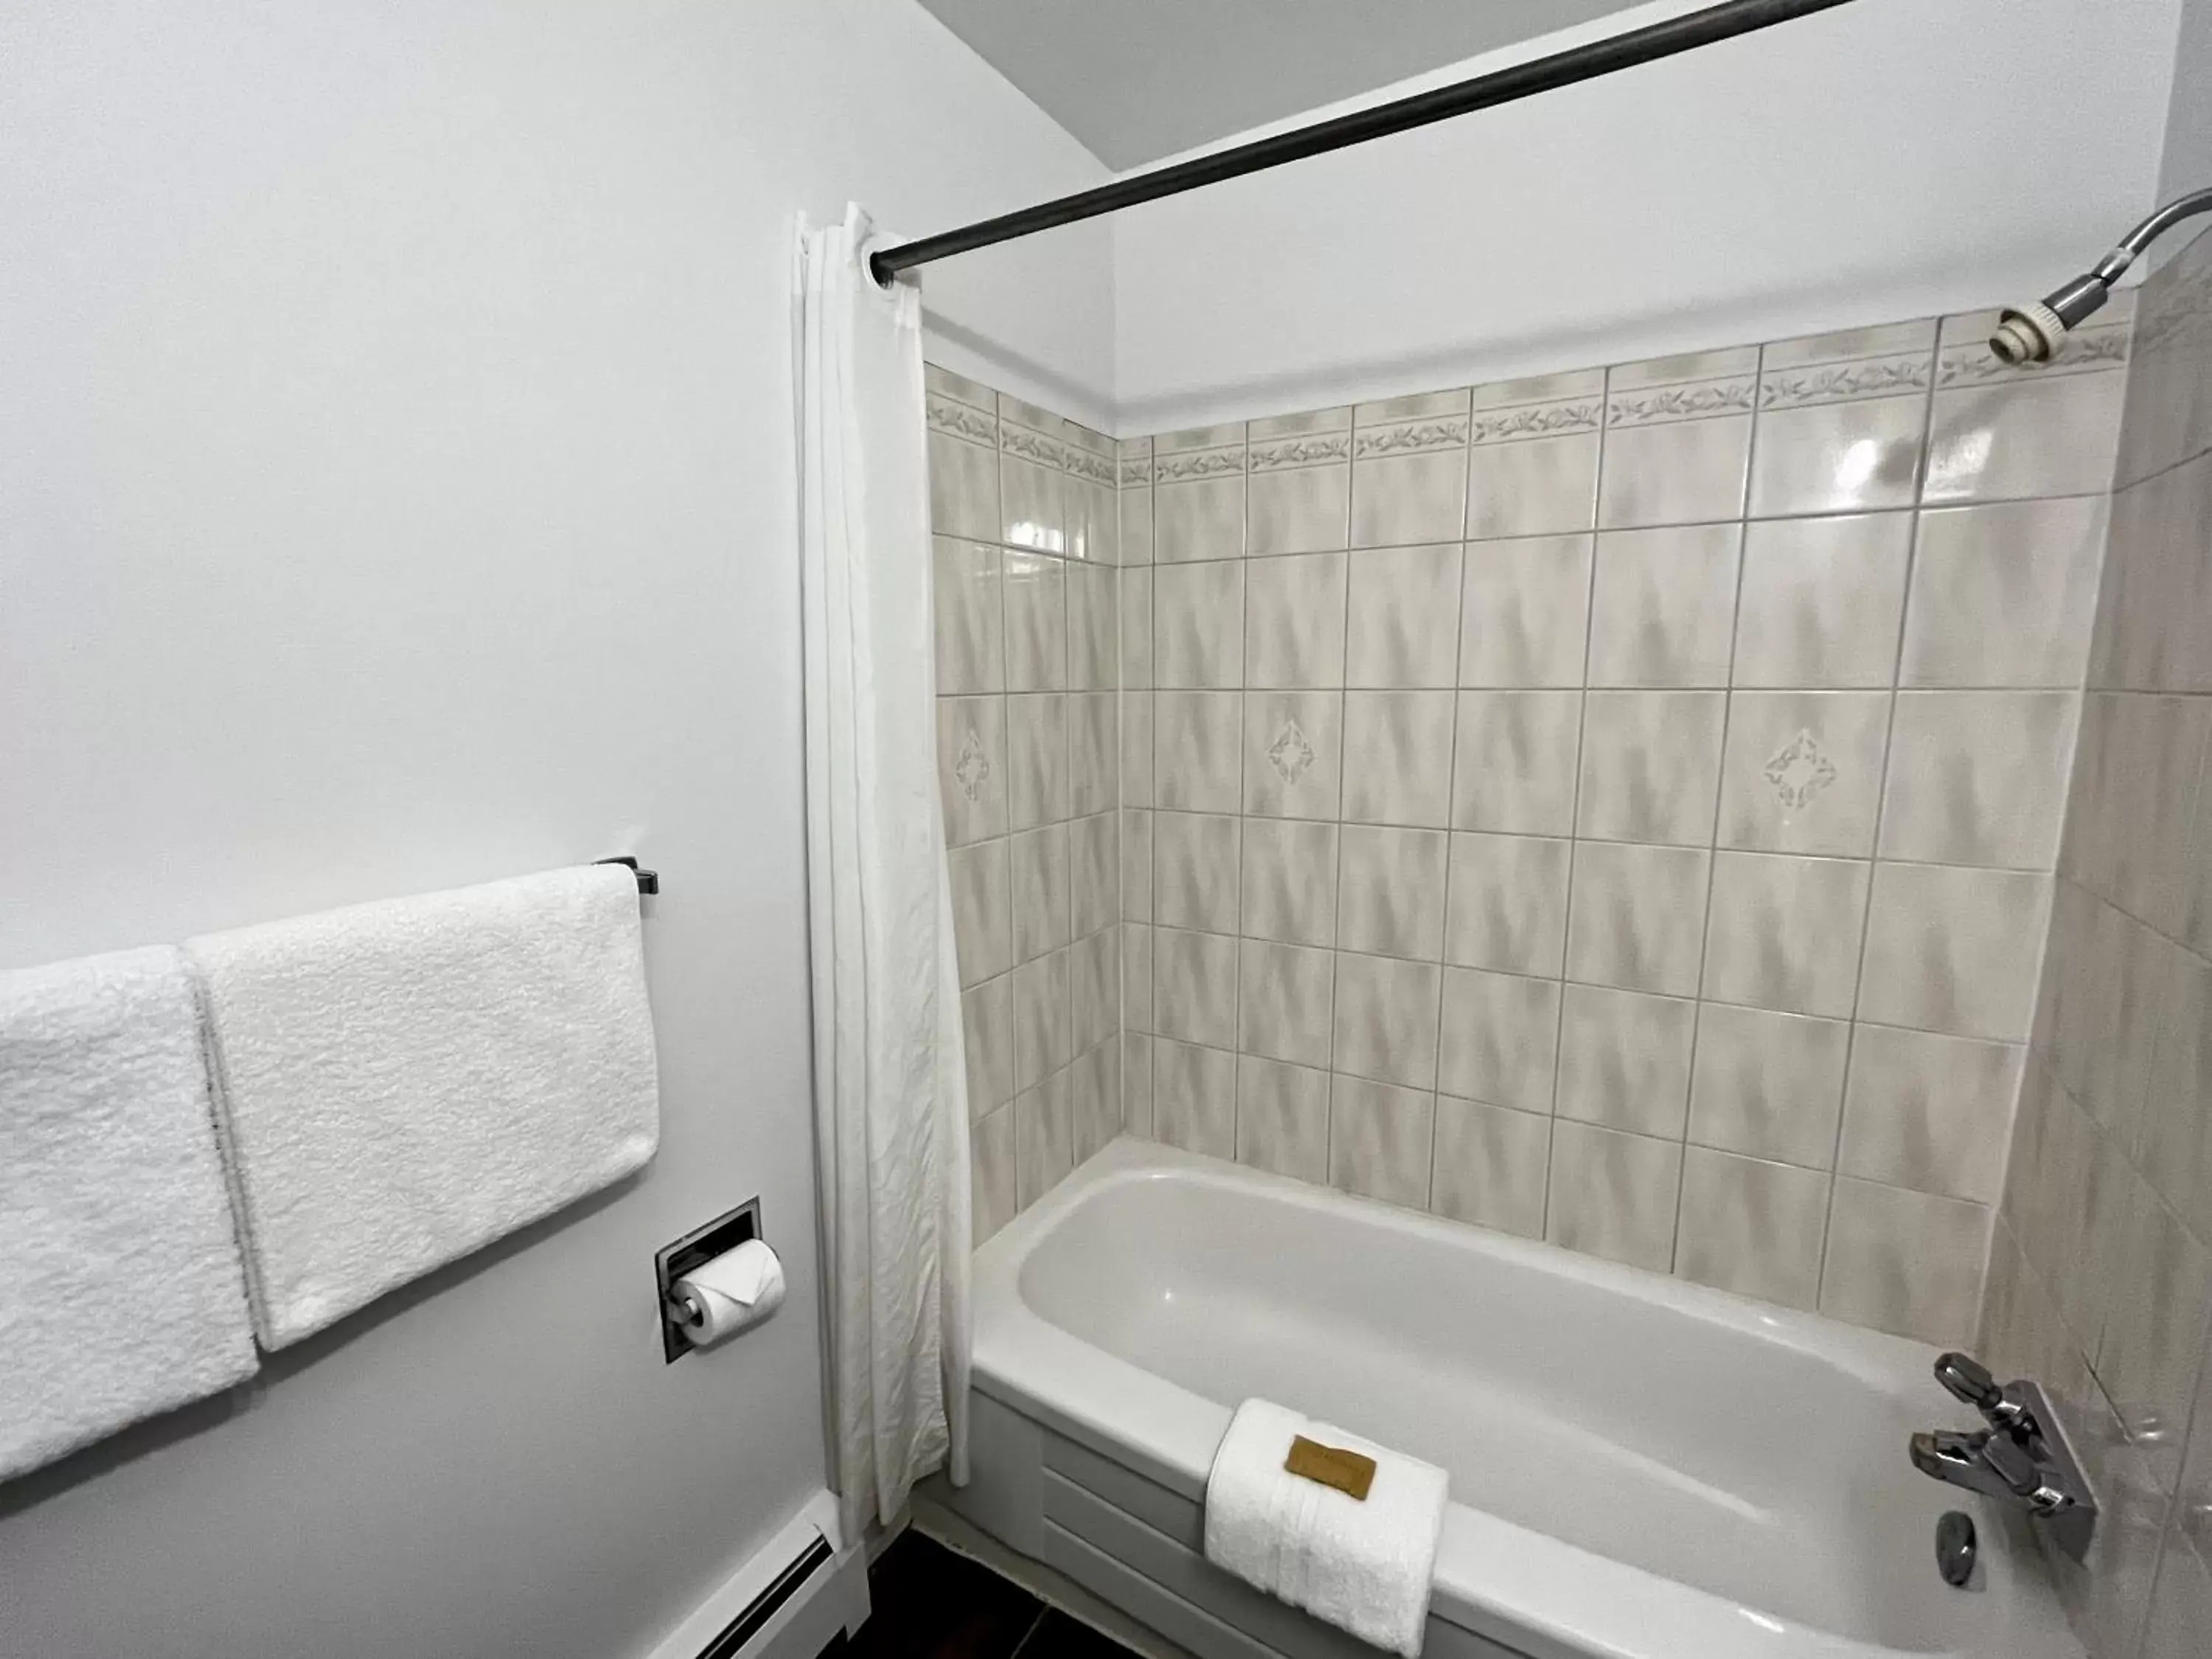 Bathroom in Anavada Inn & Suites - Prince George